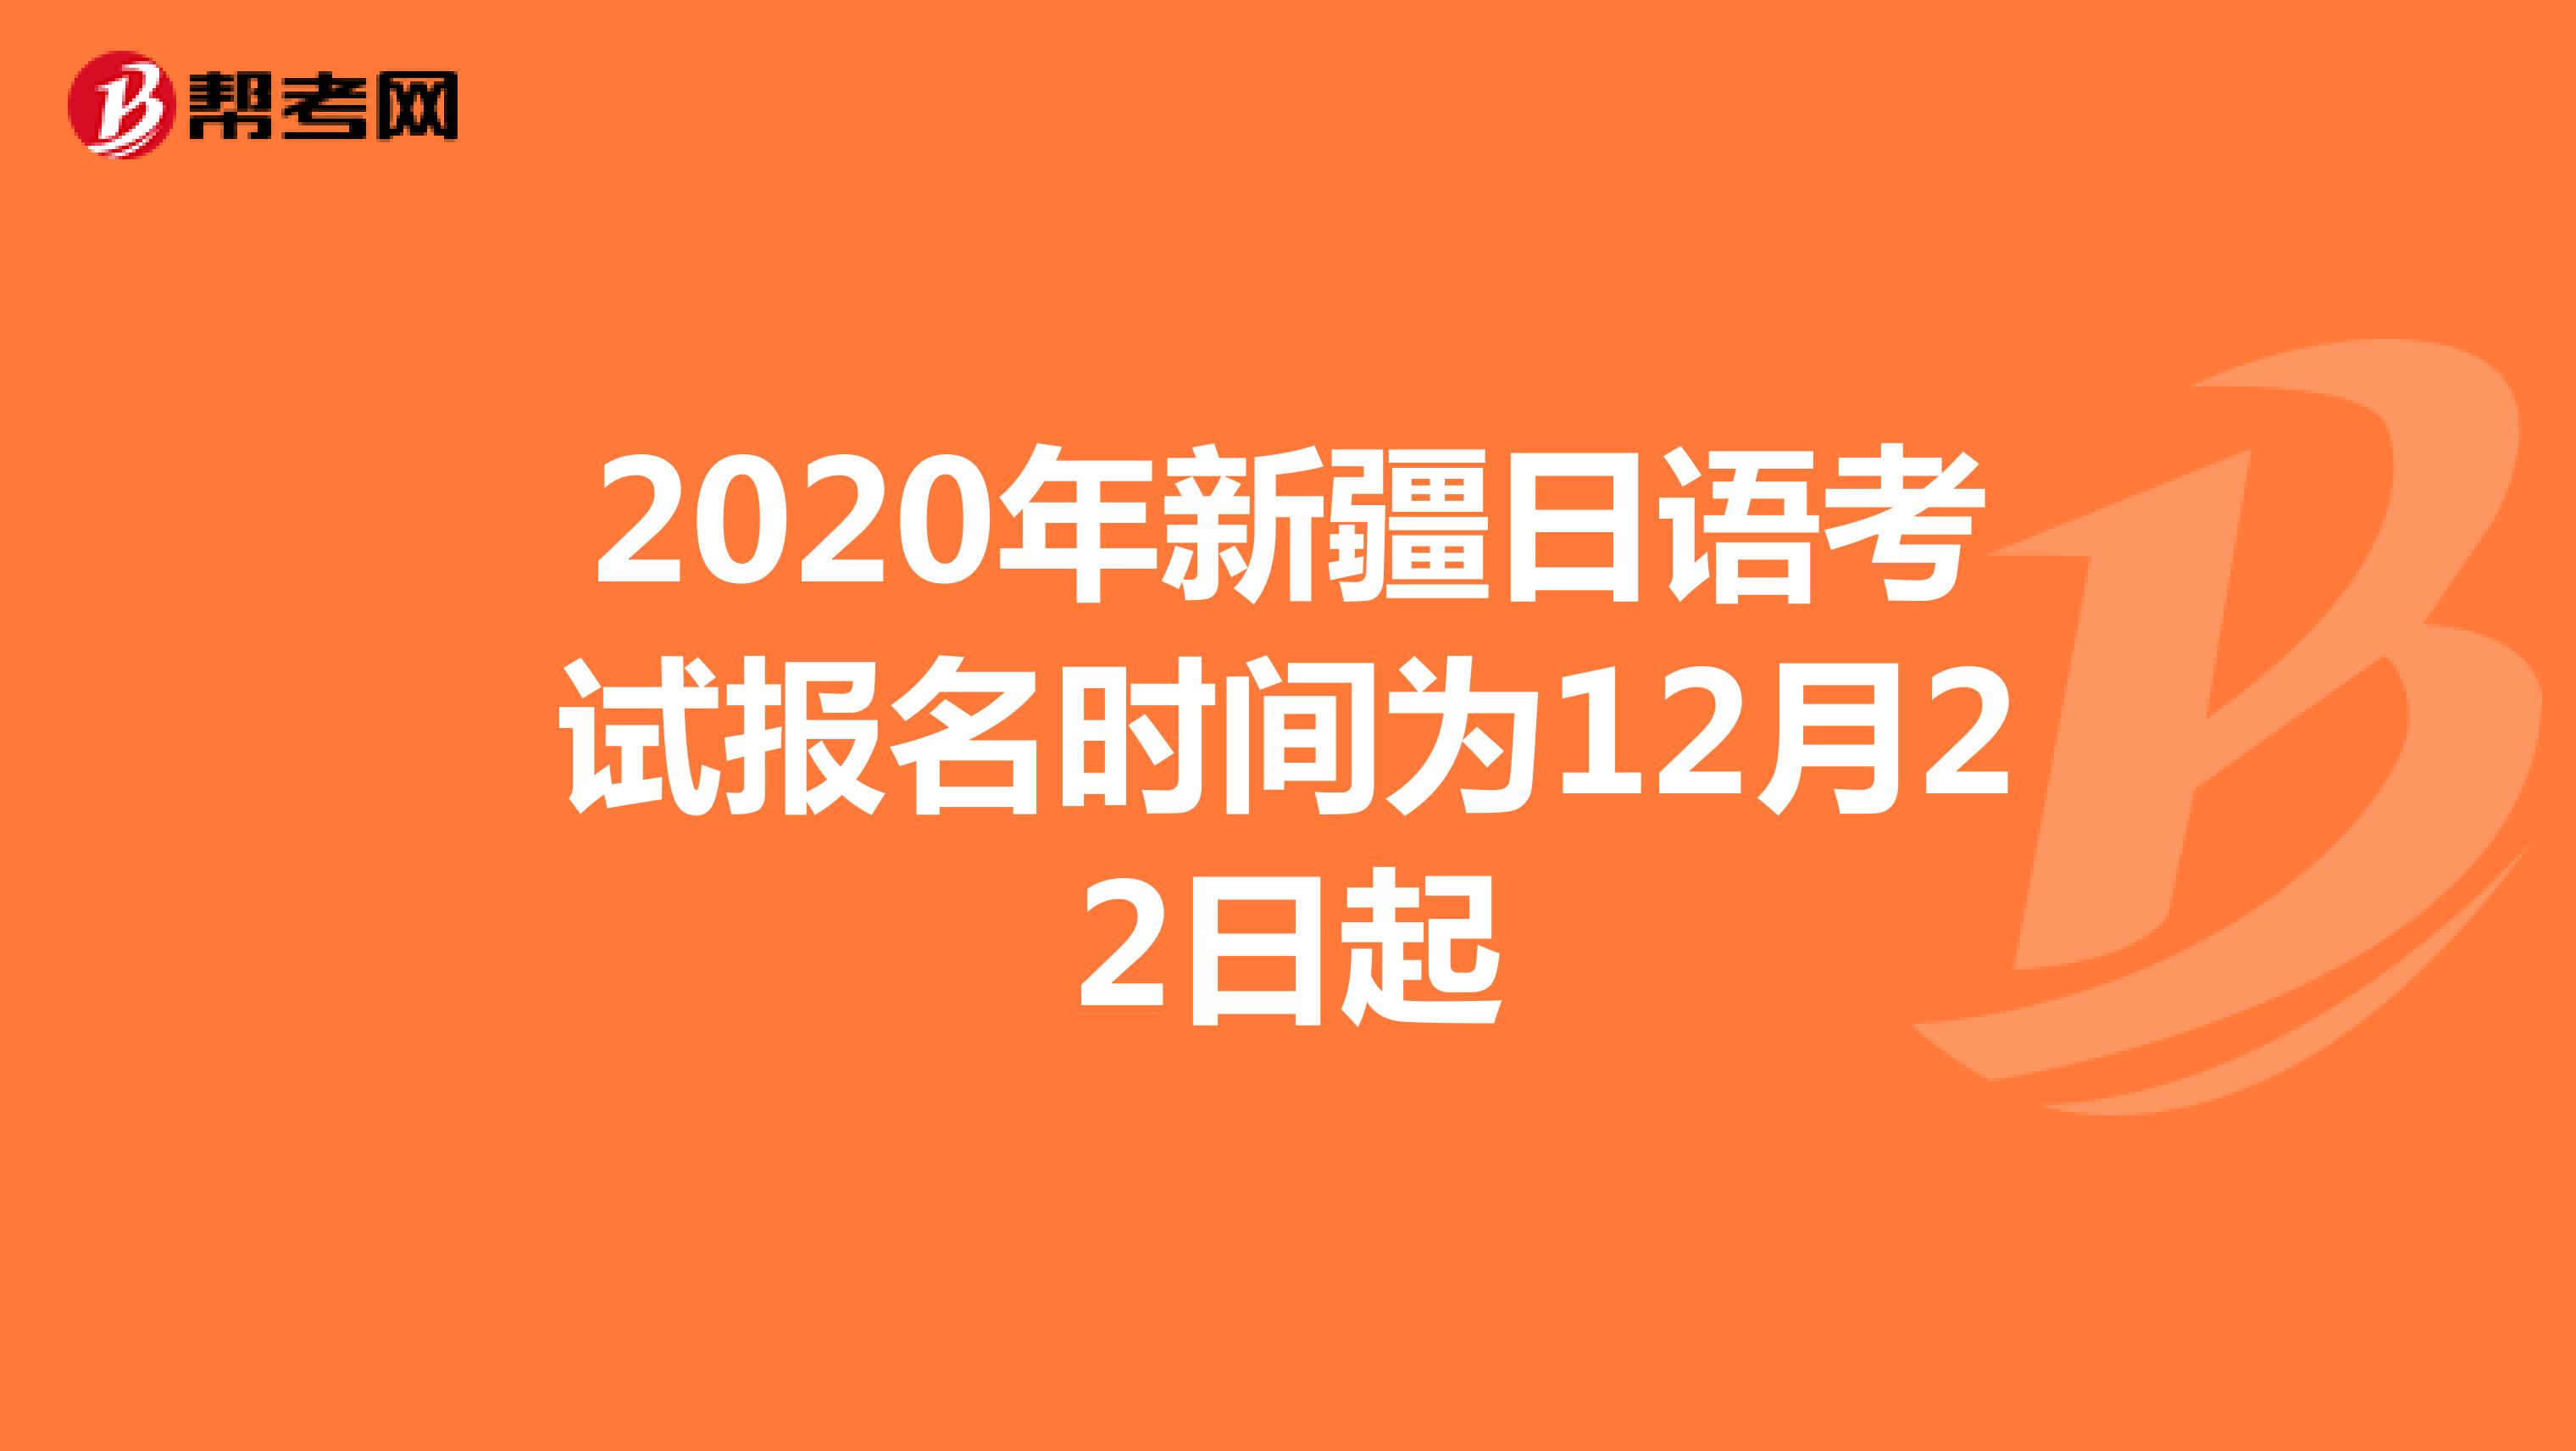 2020年新疆日语考试报名时间为12月22日起